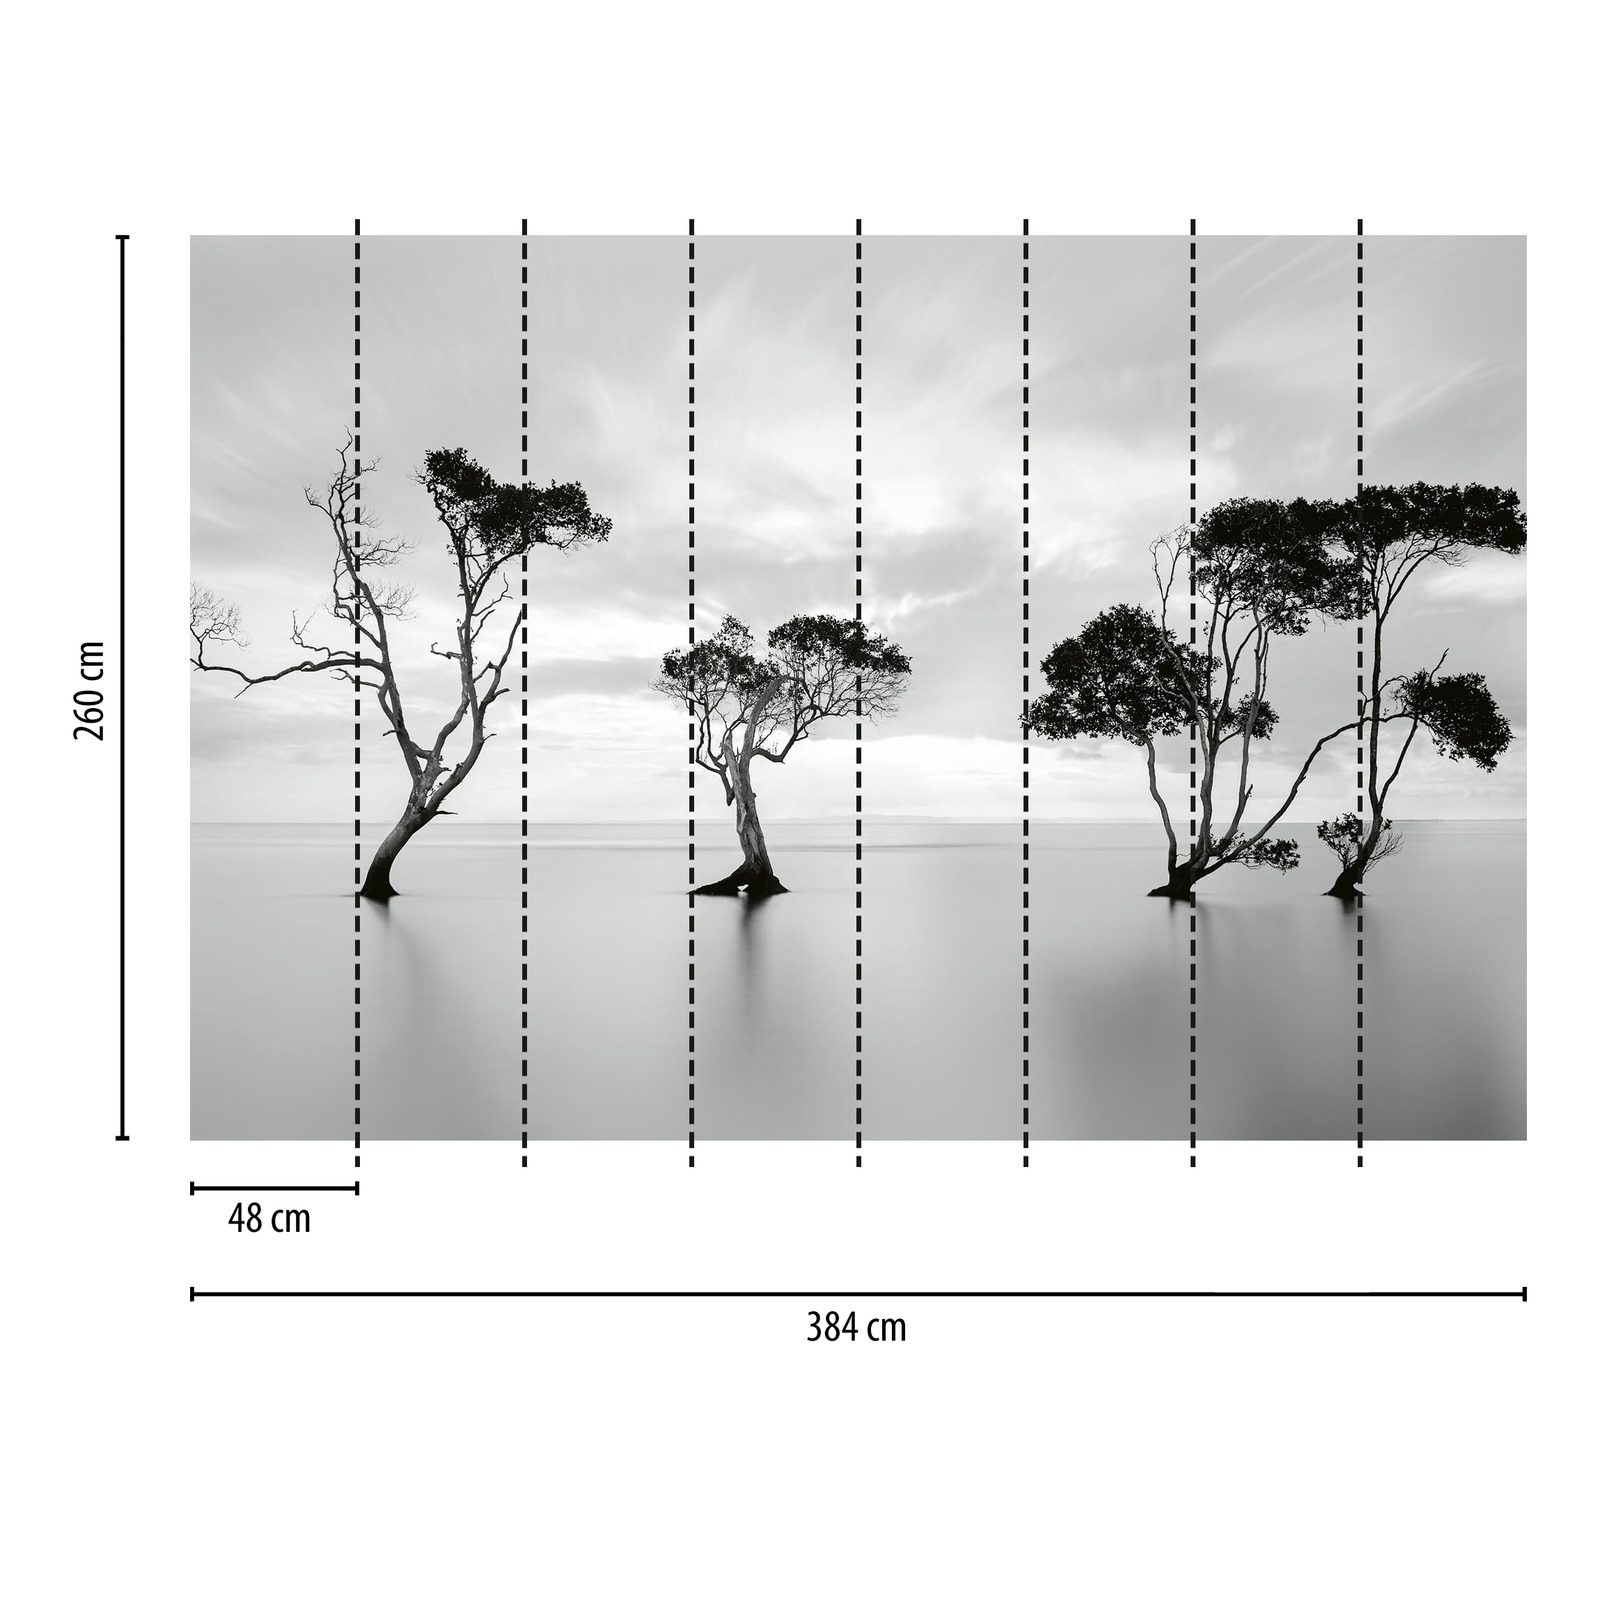             Fototapete Bäume im Wasser – Weiß, Schwarz, Grau
        